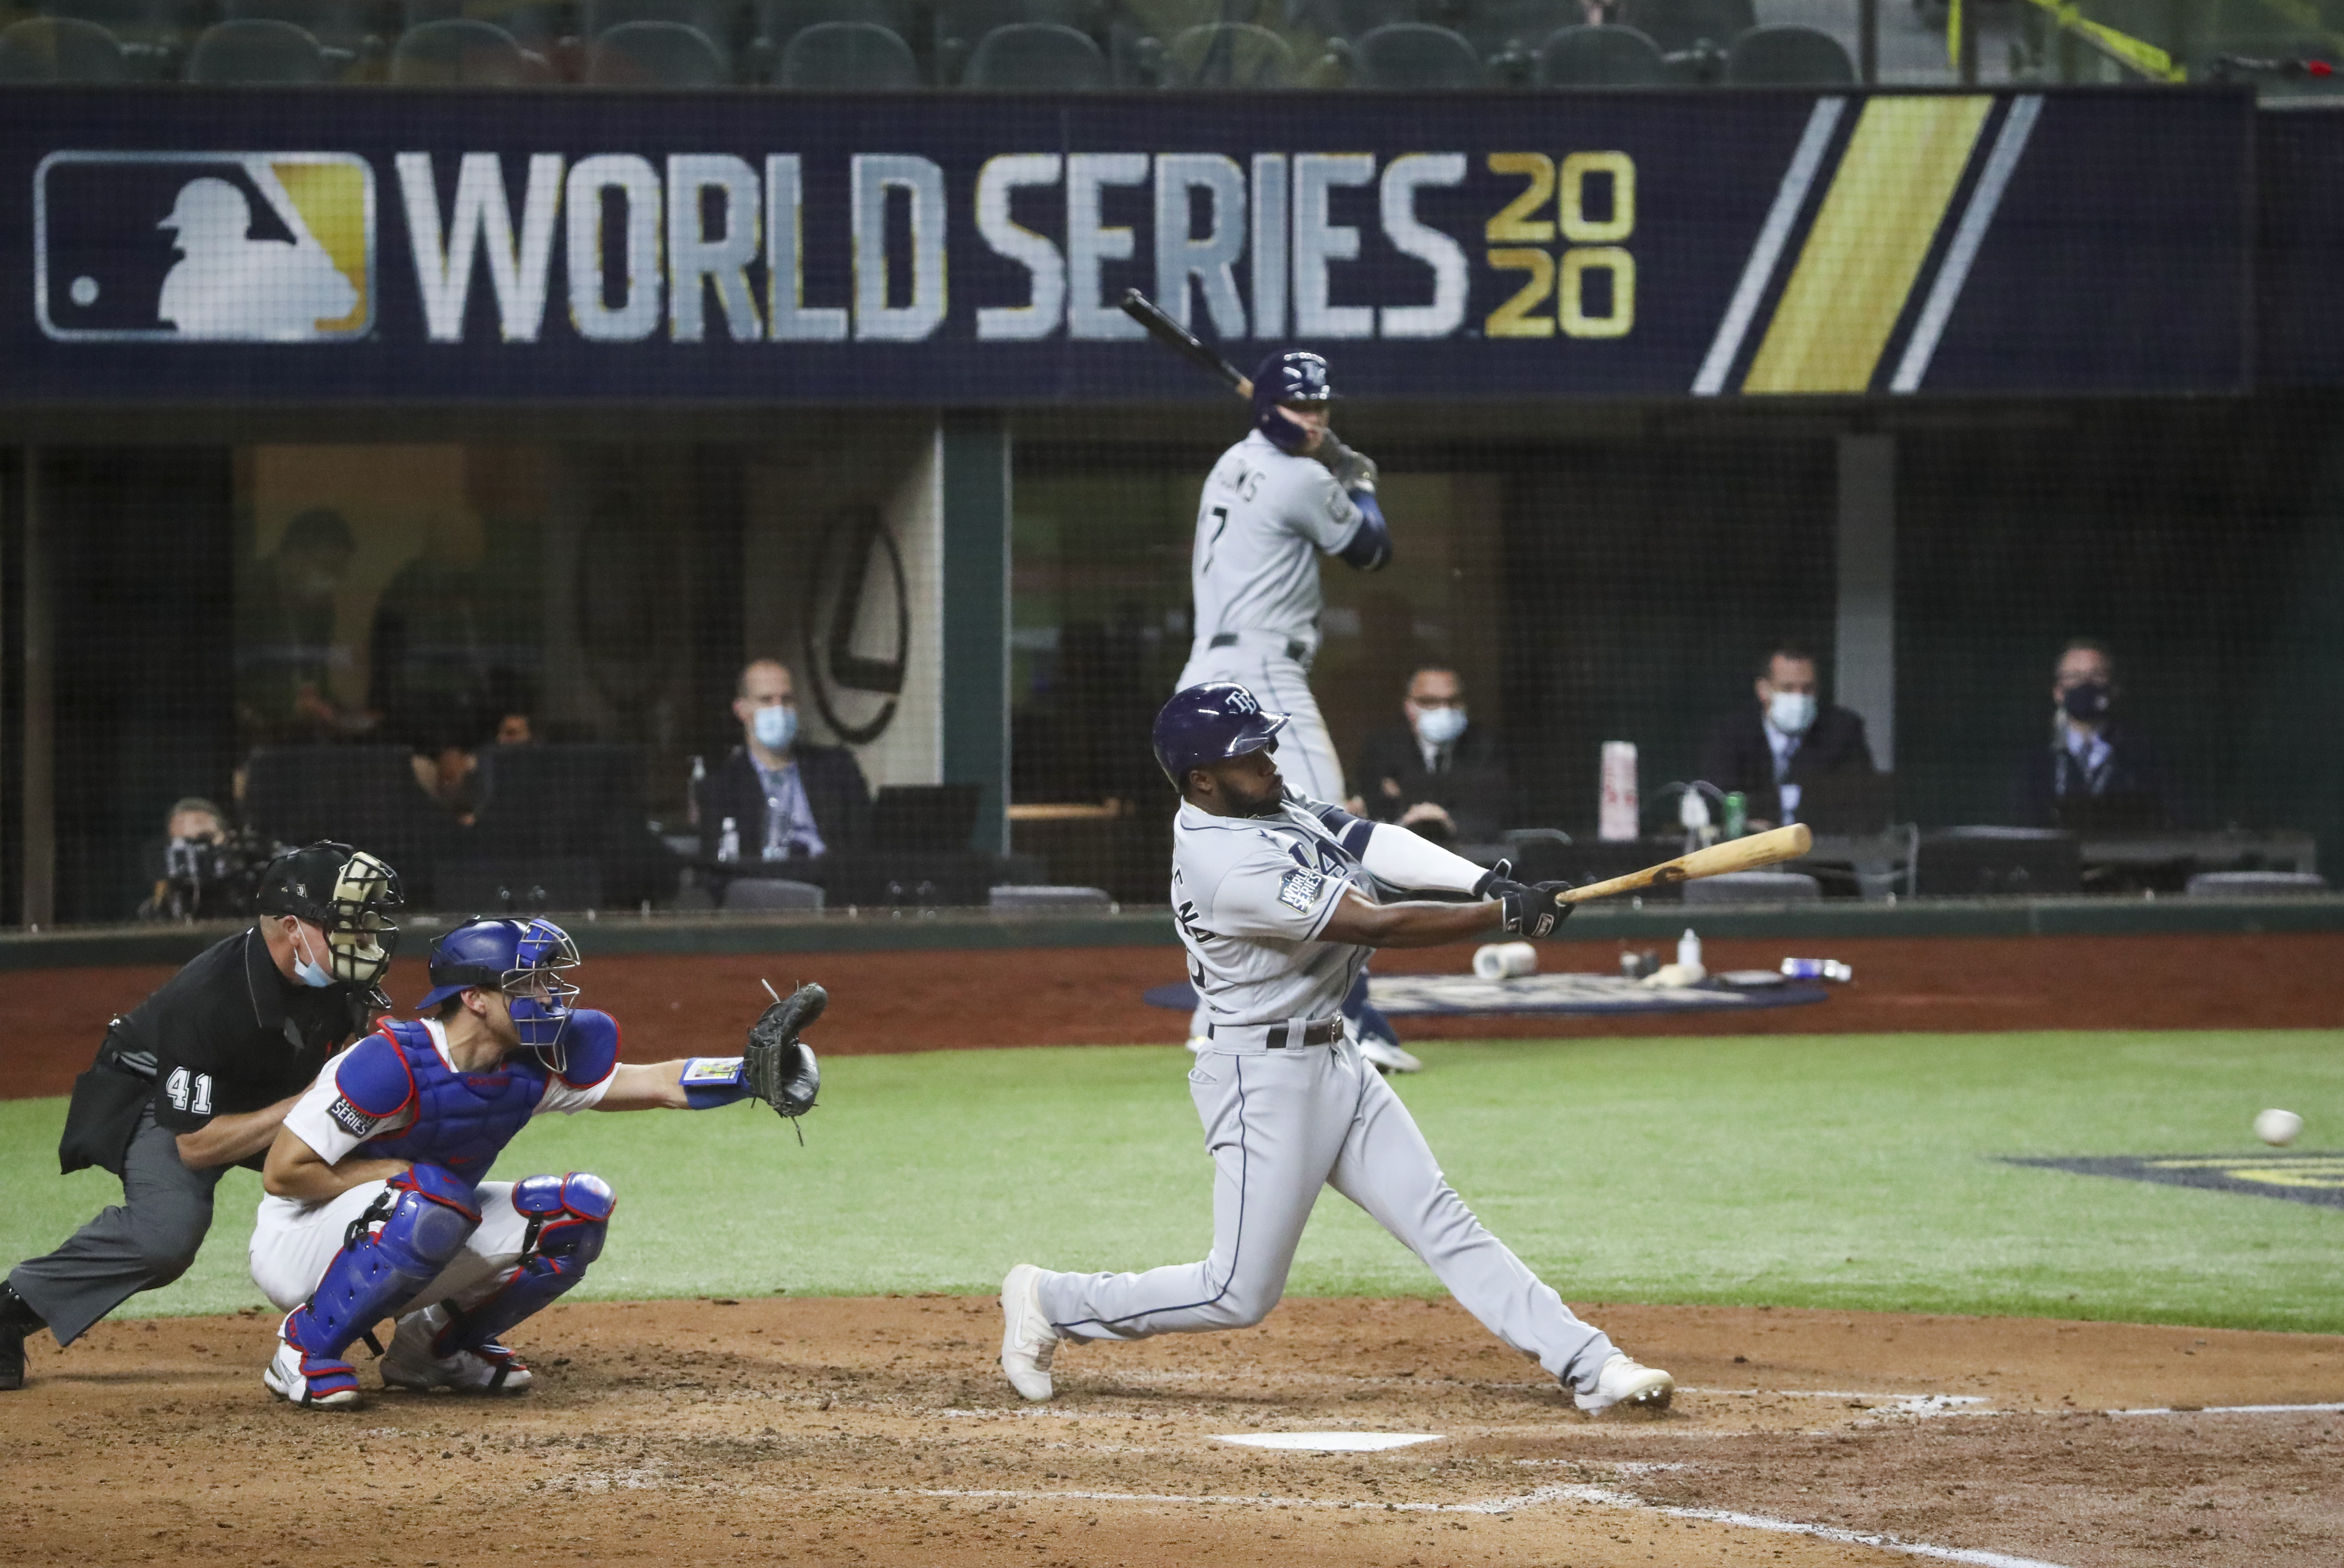 Evan Longoria's dramatic 12th-inning home run puts Tampa Bay Rays